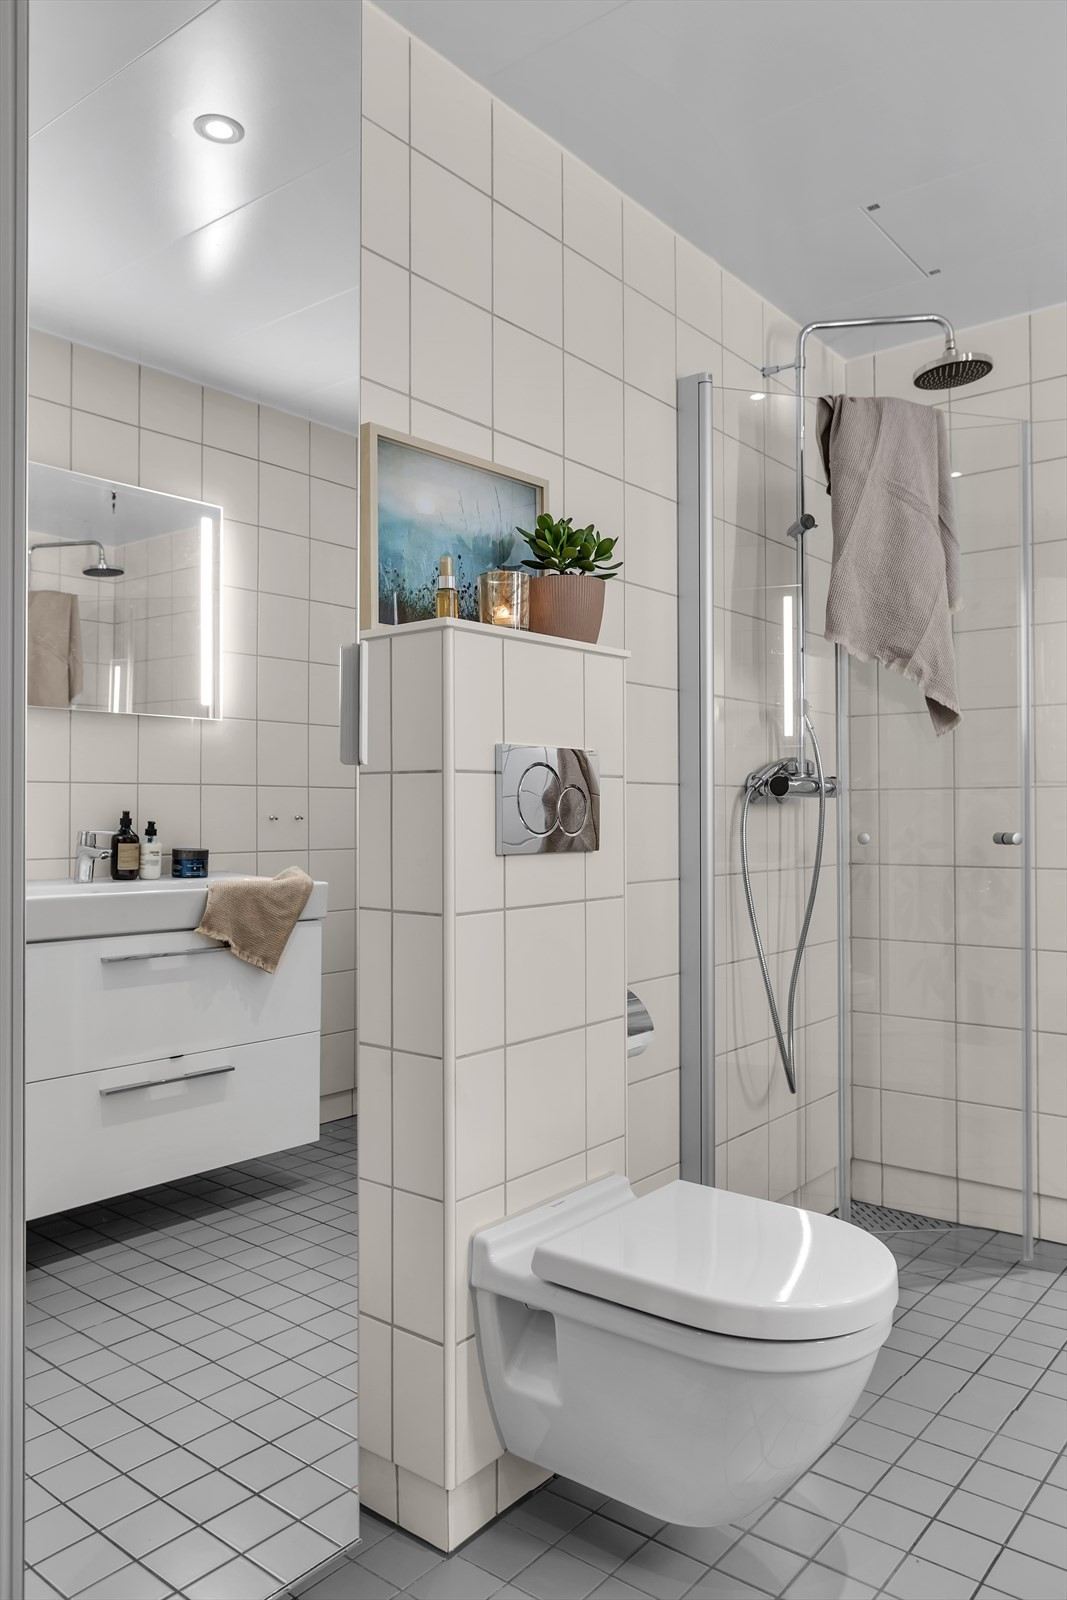 Badet er moderne og har vegghengt WC, innslagbare dusjdører, og praktiske innredninger